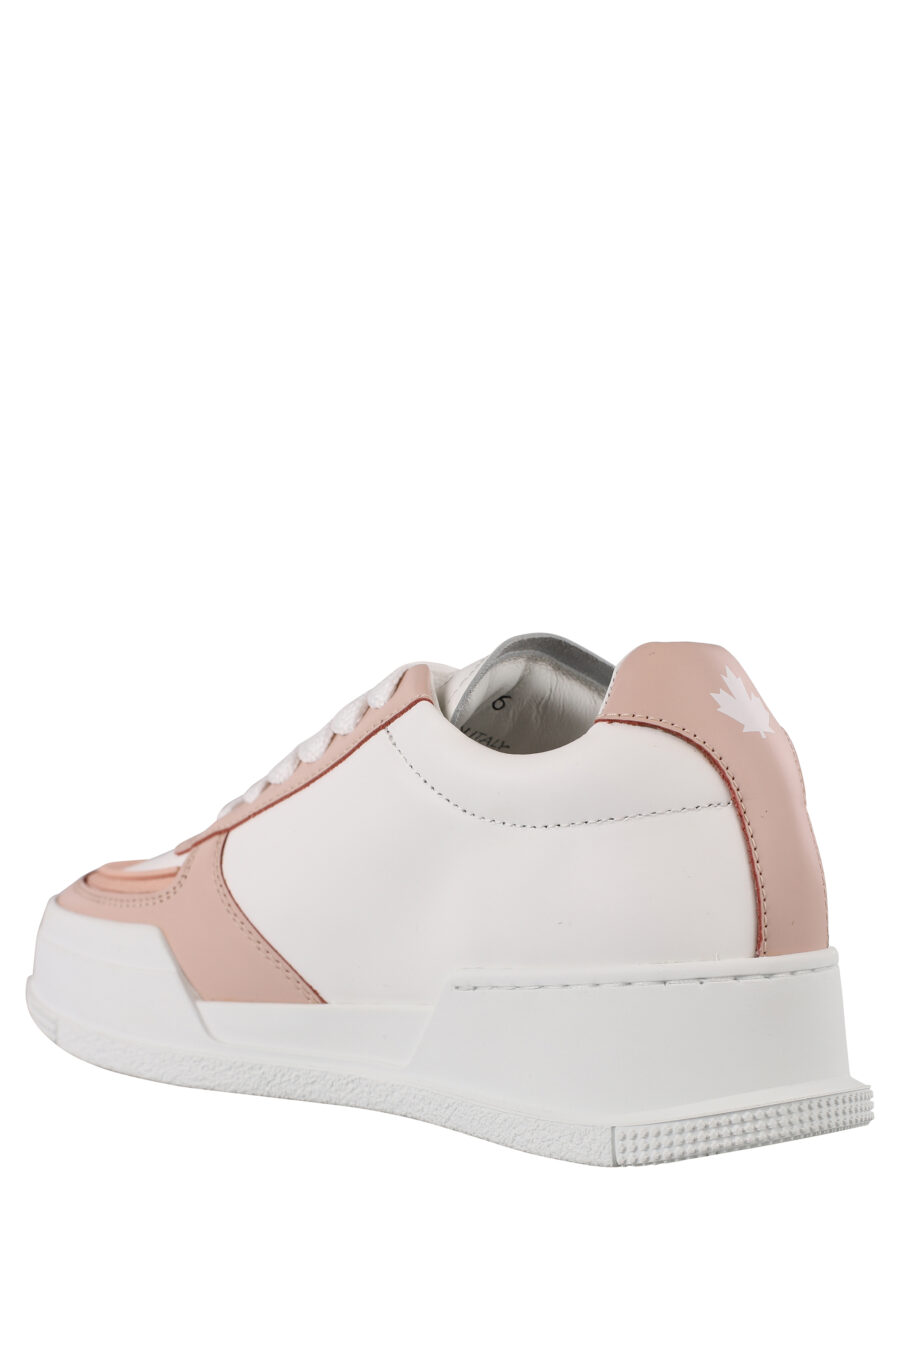 Zapatillas blancas de plataforma con detalle rosa - IMG 1176